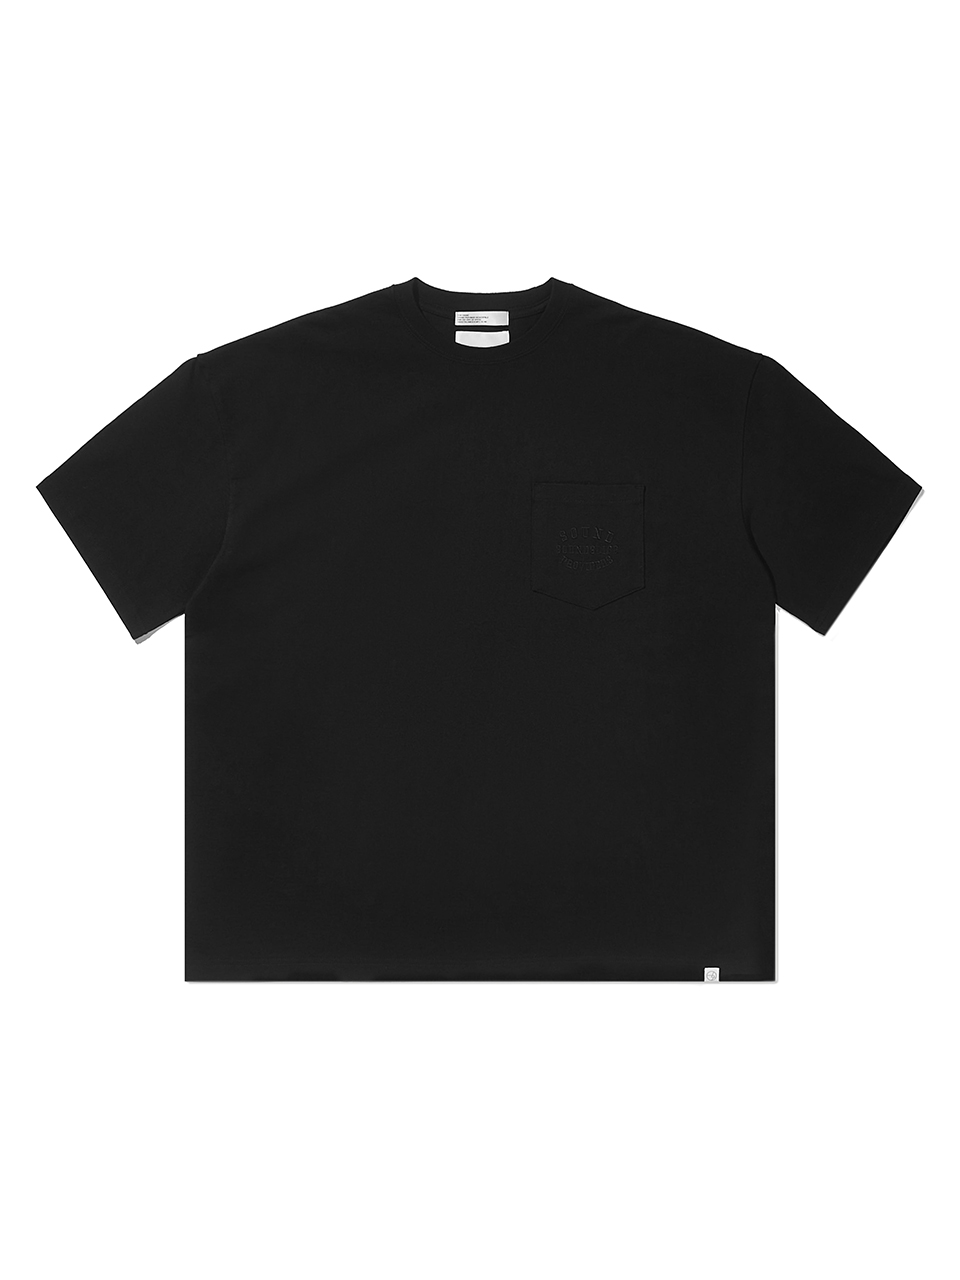 SOUNDSLIFE - Embroidery Pocket T-Shirt Black